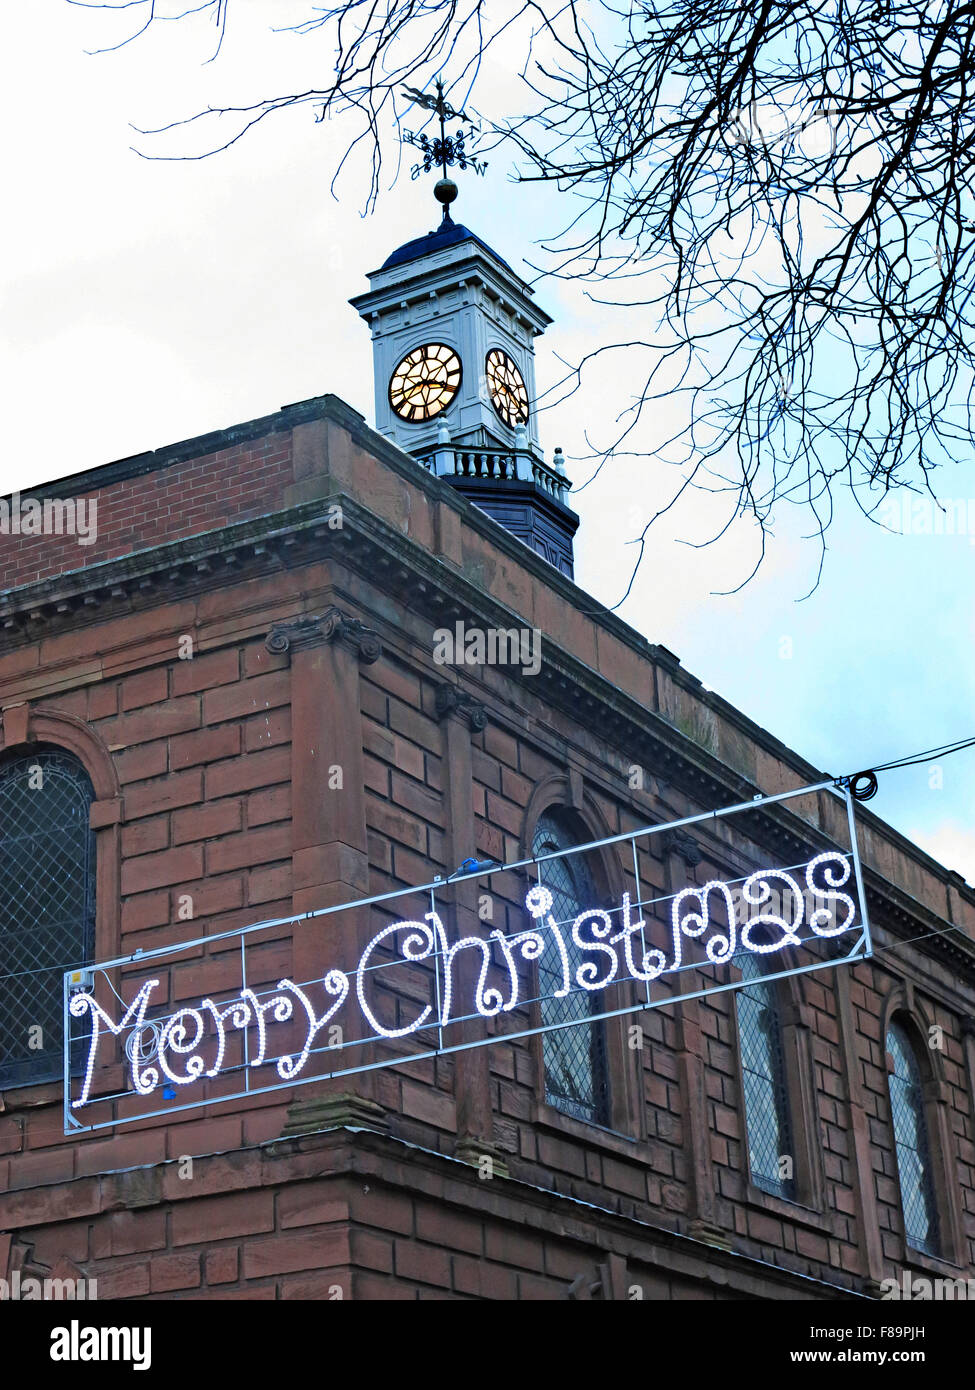 Joyeux Noël de Warrington, Sankey St, Cheshire, England, UK Banque D'Images